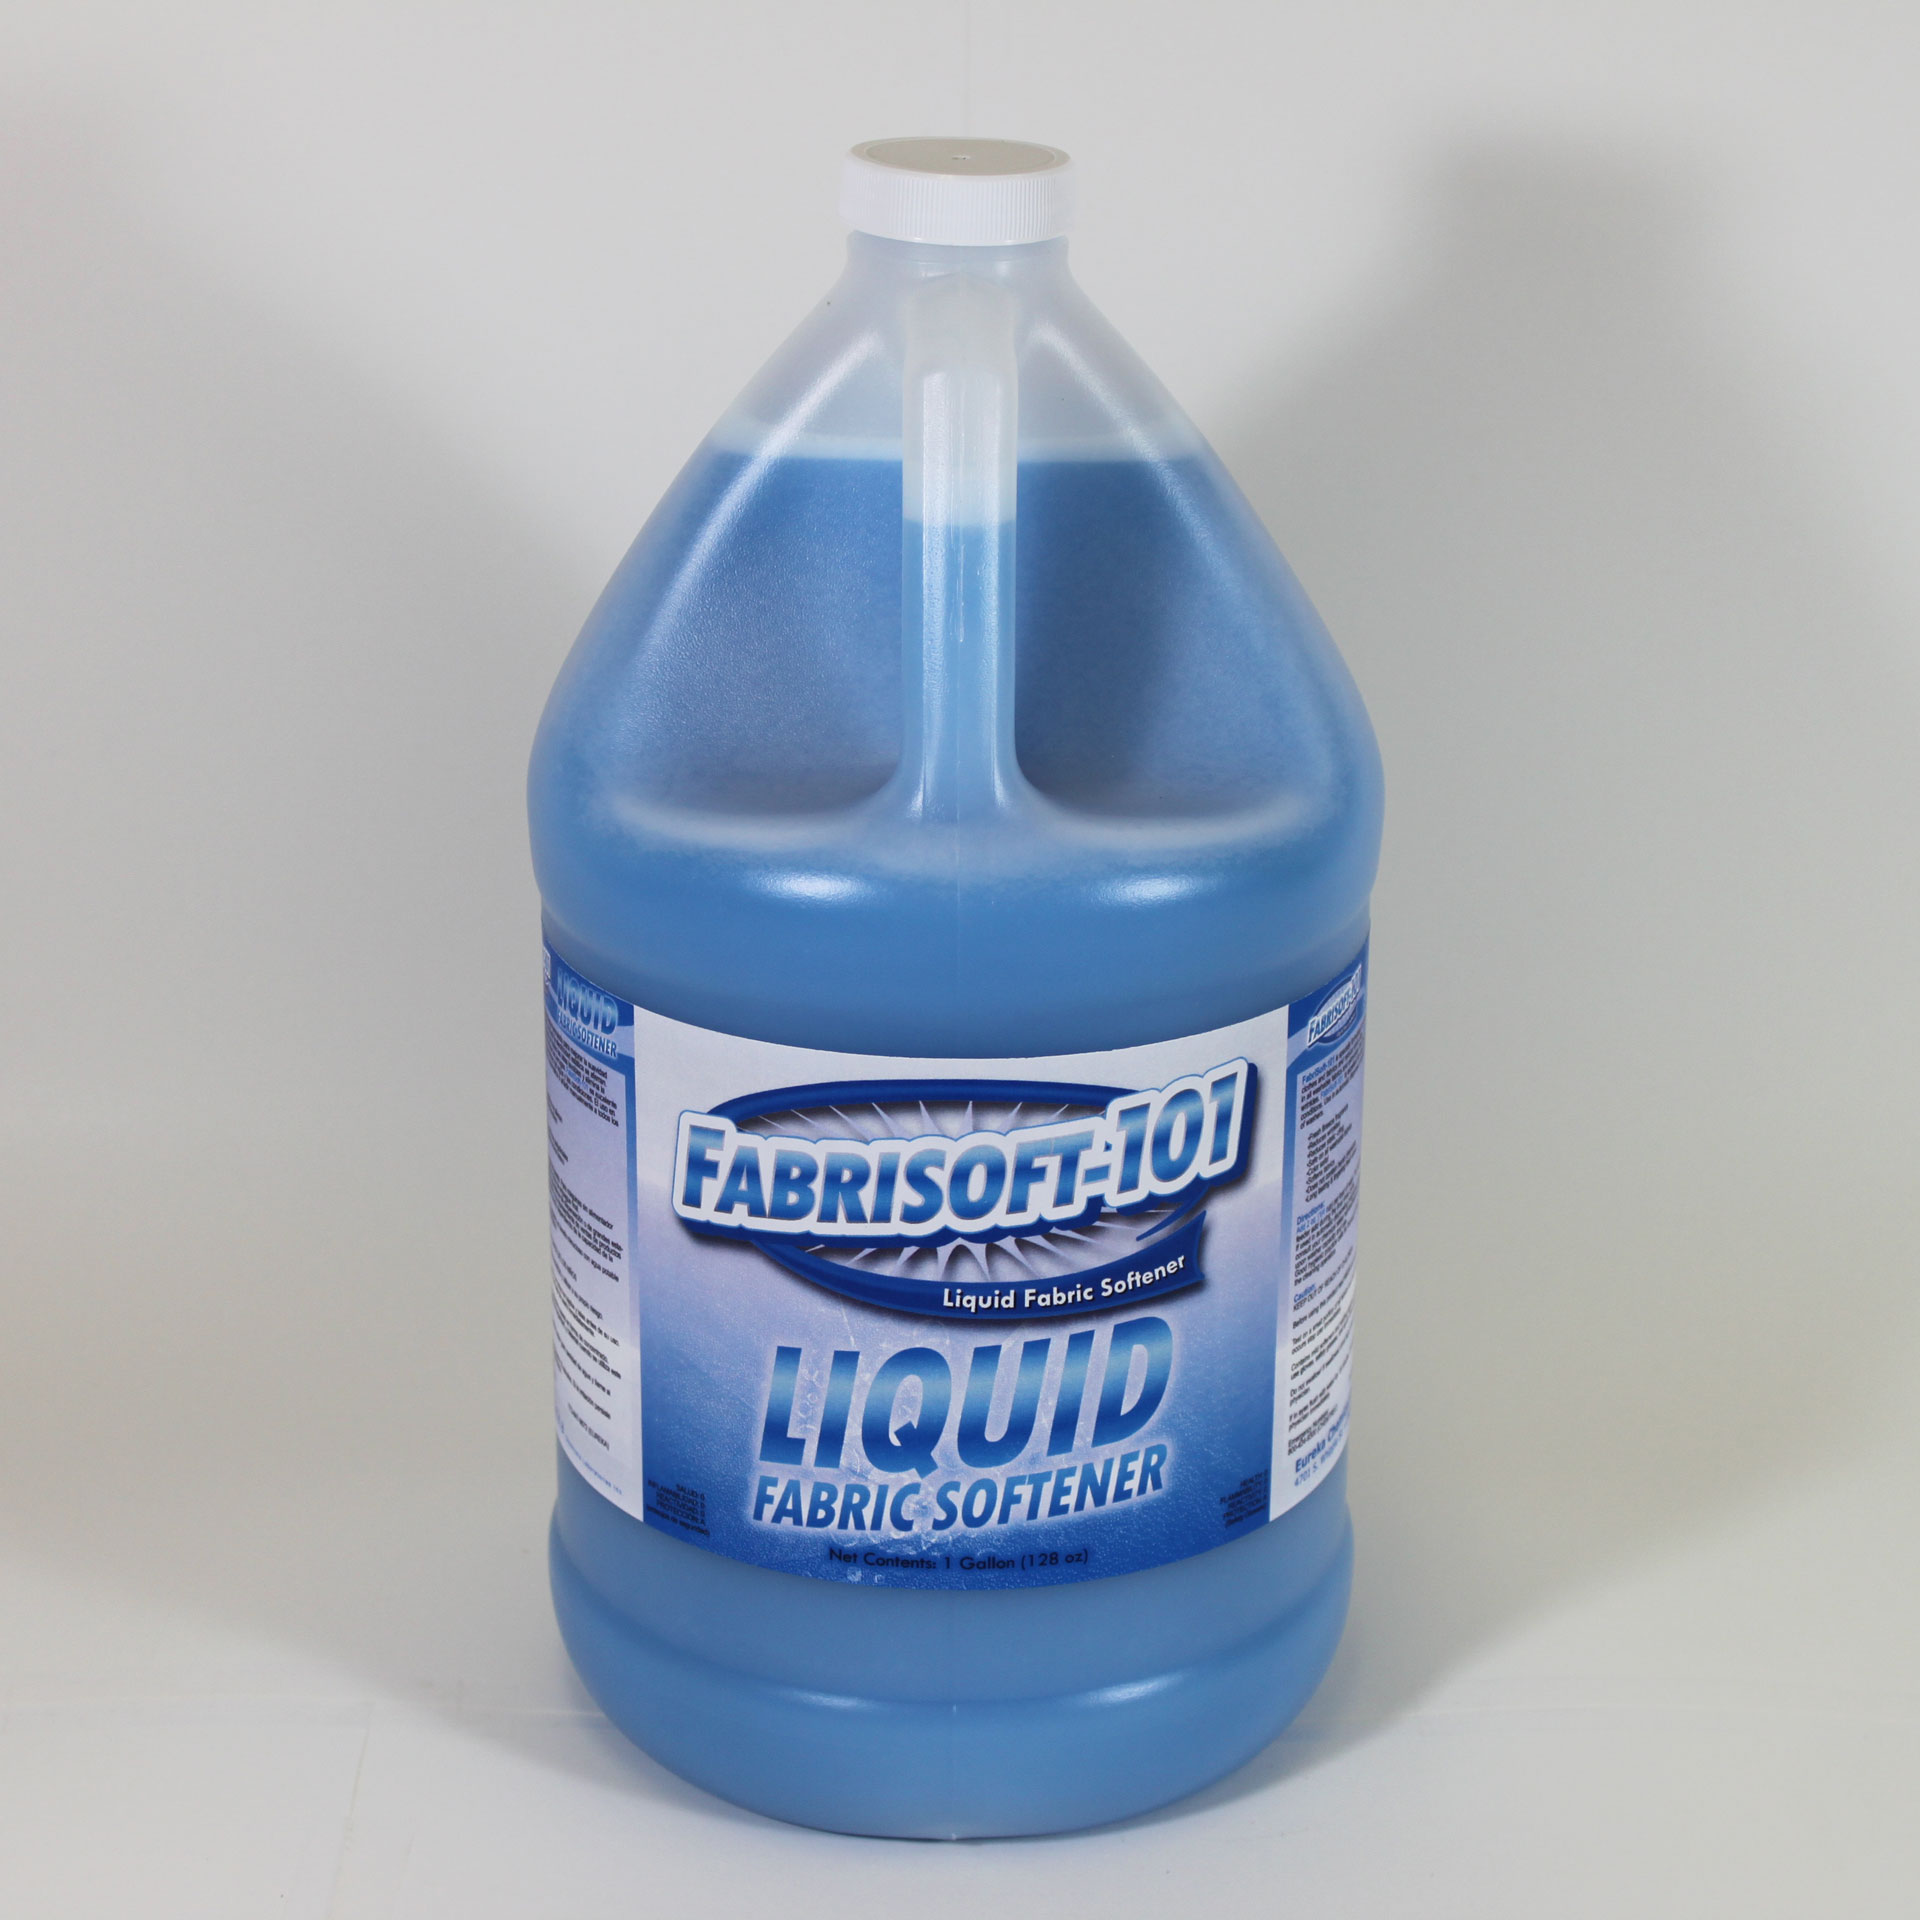 Bottle of Fabrisoft-101.